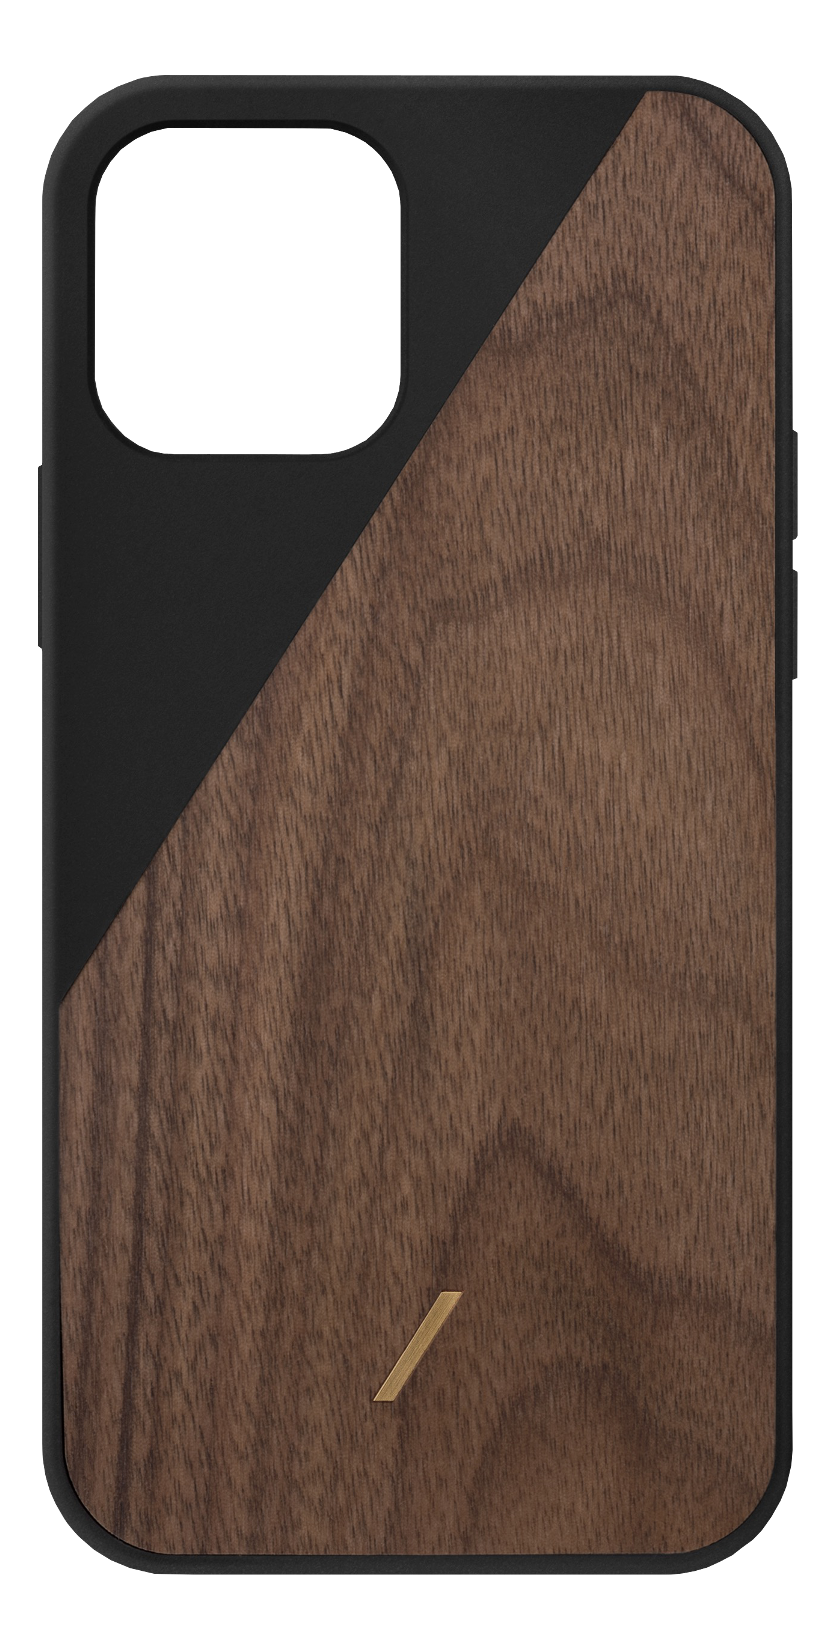 NATIVE UNION Clic Wooden - Custodia (Adatto per modello: Apple iPhone 12 Pro Max)